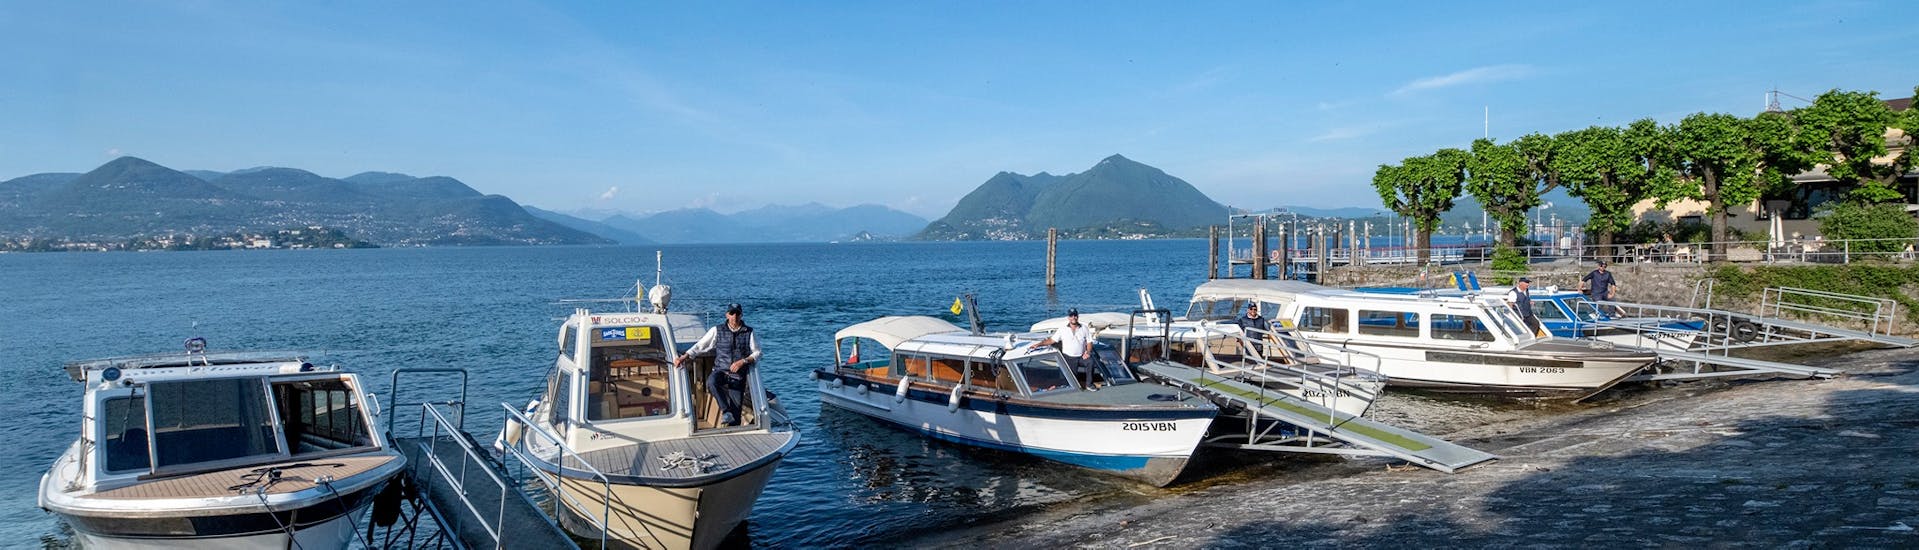 Vista delle barche usate per il Transfer in barca da Stresa a Isola Pescatori con Lake Tours Stresa.